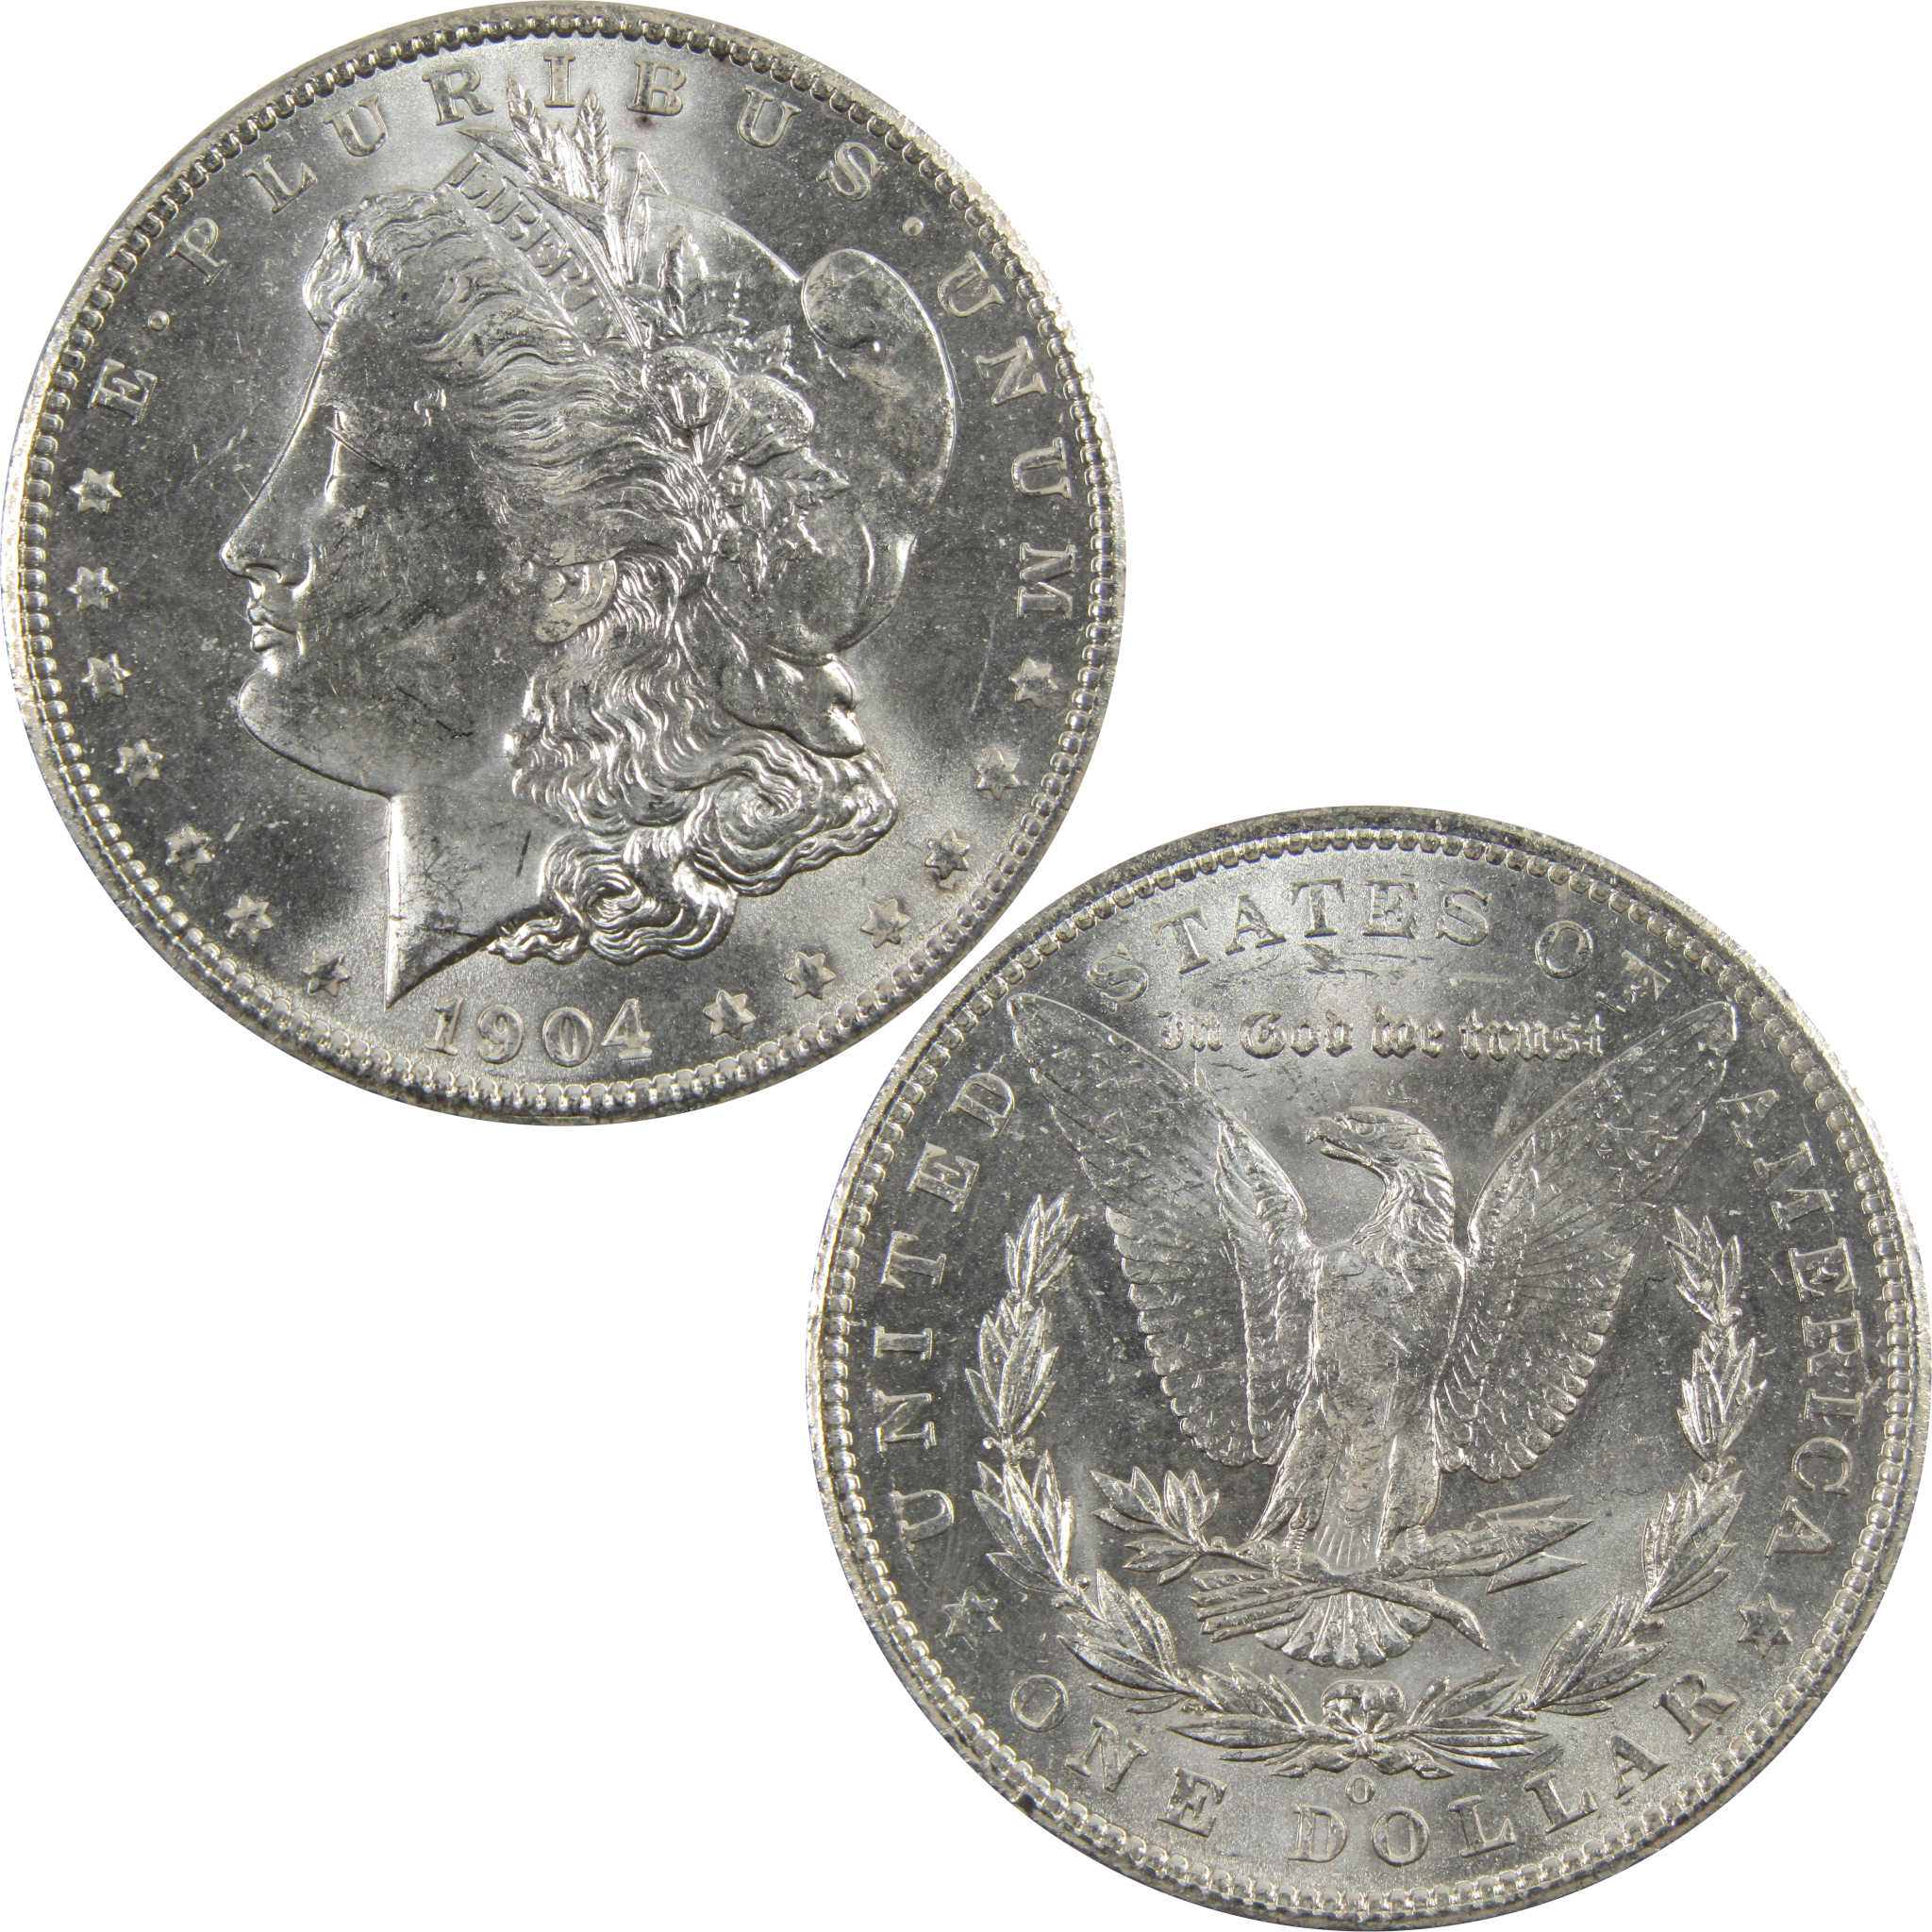 1904 O Morgan Dollar BU Uncirculated 90% Silver $1 Coin SKU:I5280 - Morgan coin - Morgan silver dollar - Morgan silver dollar for sale - Profile Coins &amp; Collectibles